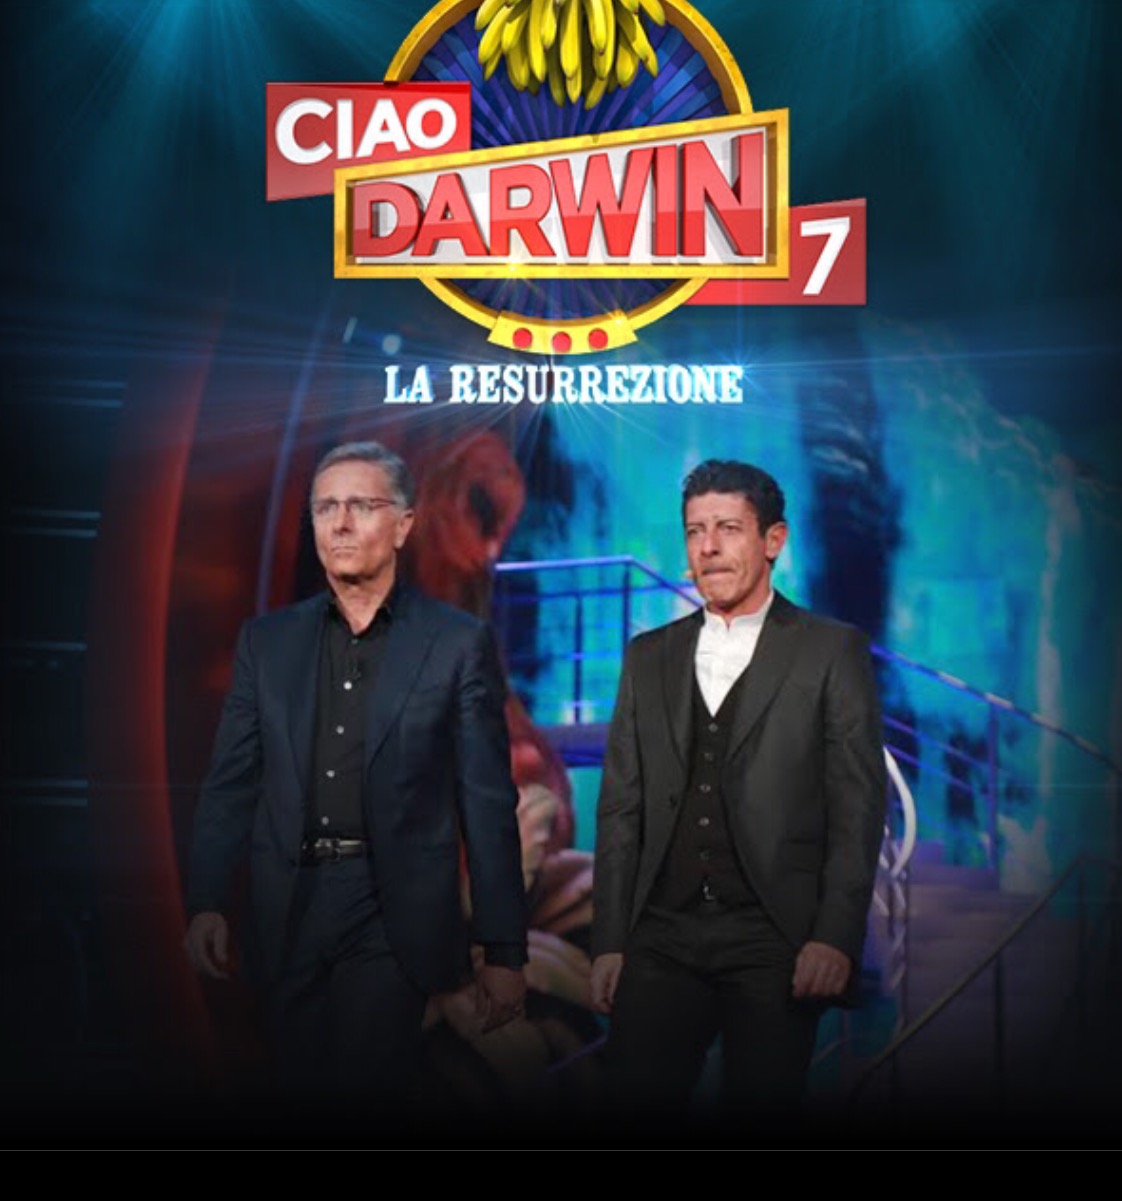 Ciao Darwin Paolo Bonolis Luca Laurenti show televisivo varietà